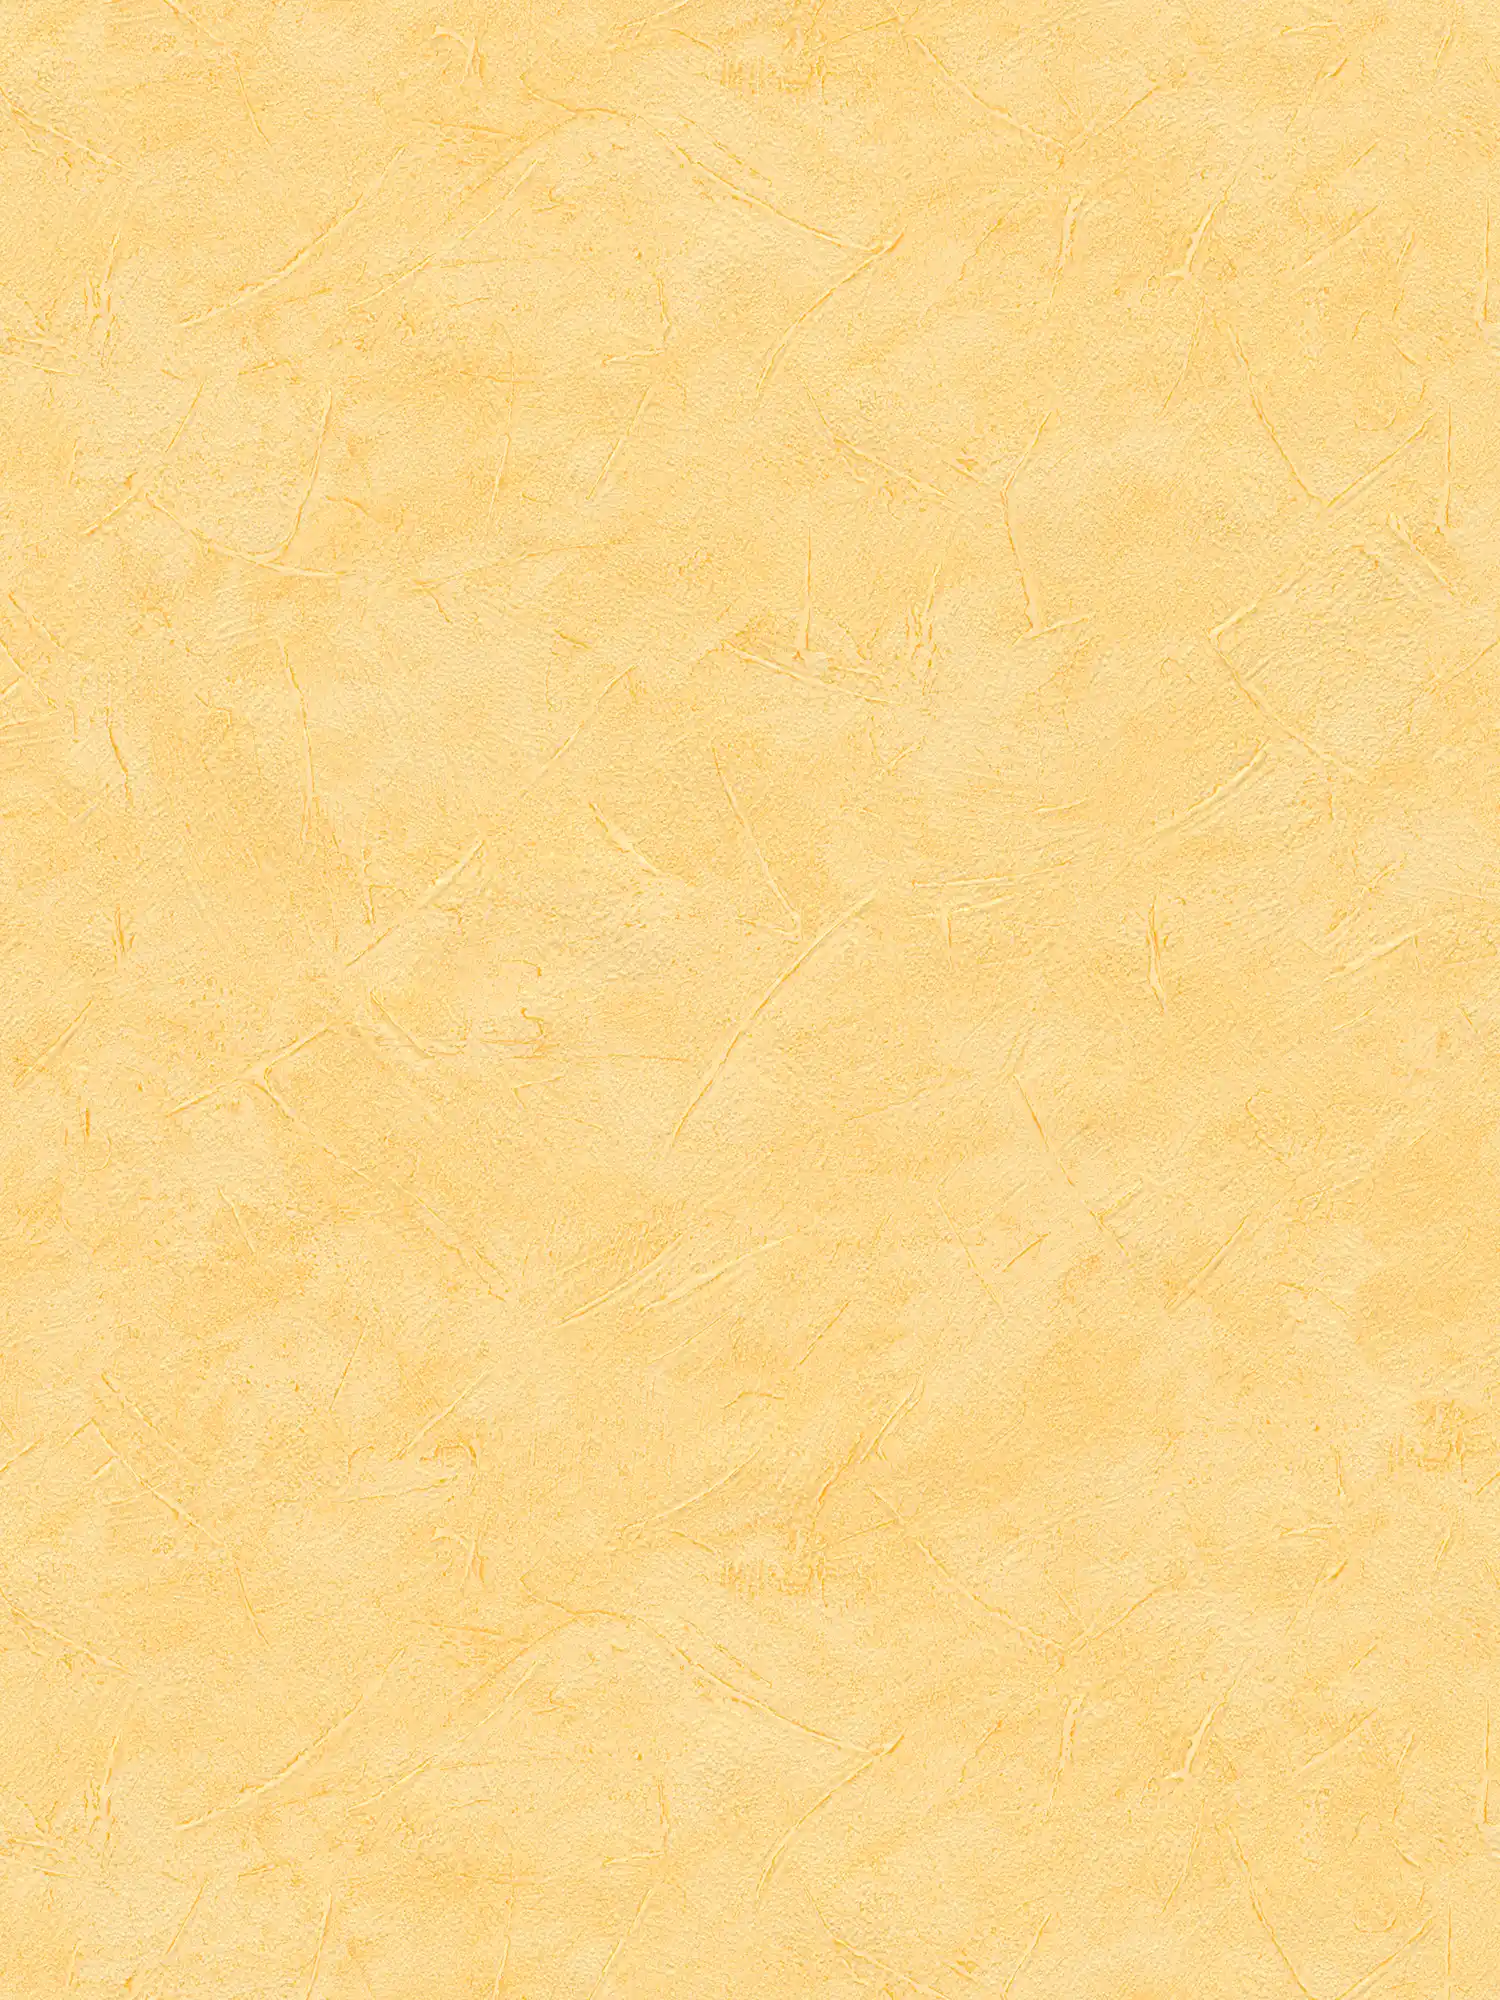 Gipsbehang veeggips geel uni met structuurpatroon
